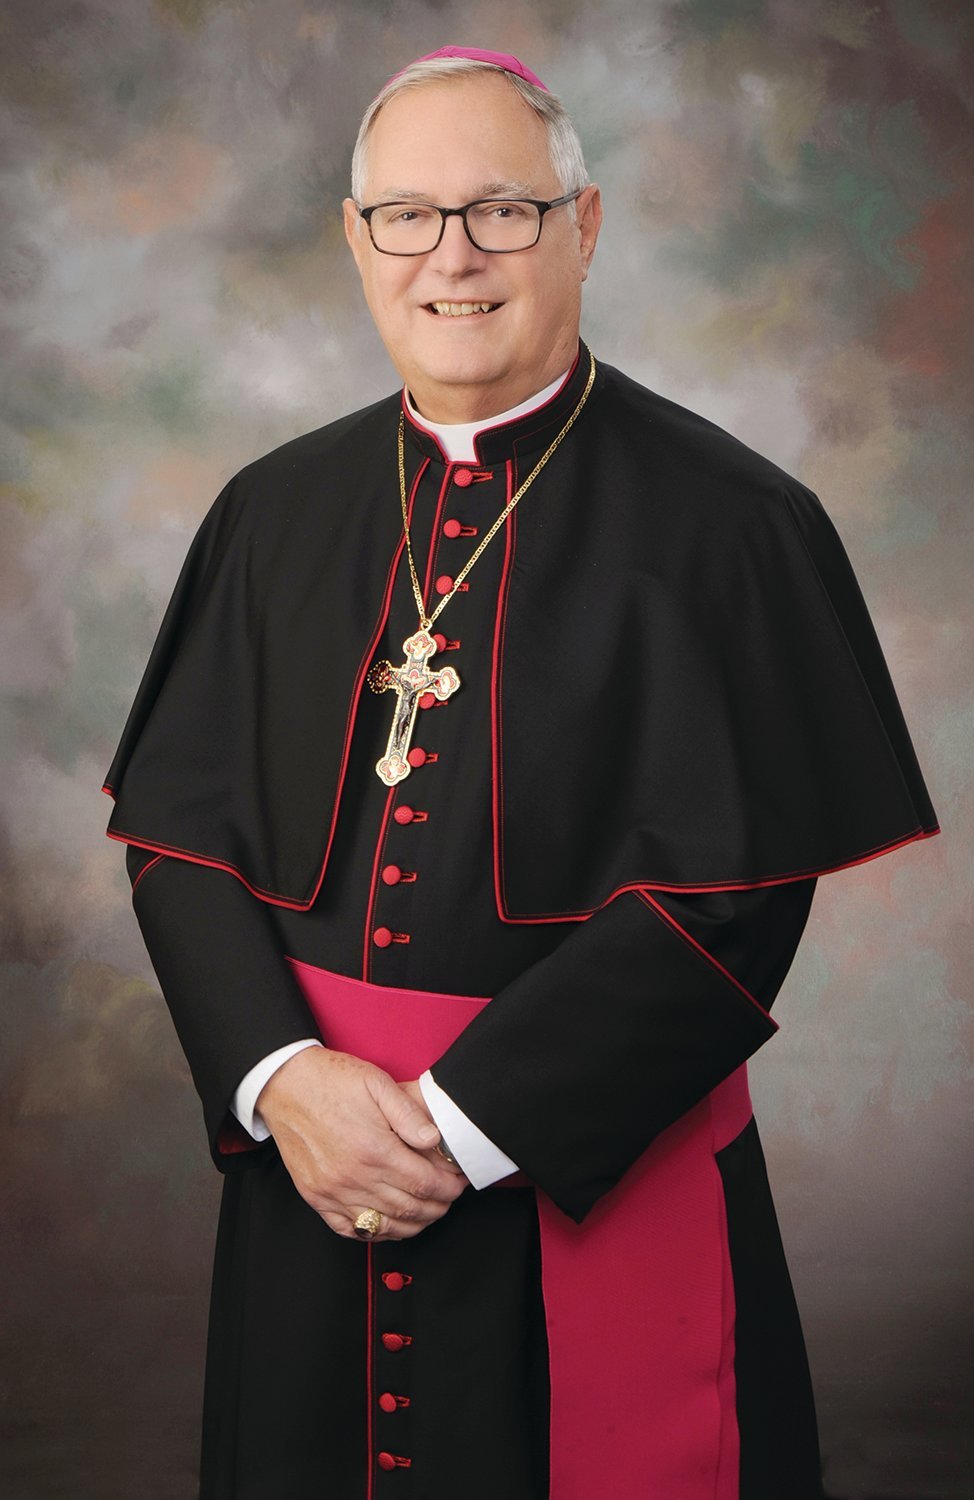 Bishop Thomas J. Tobin